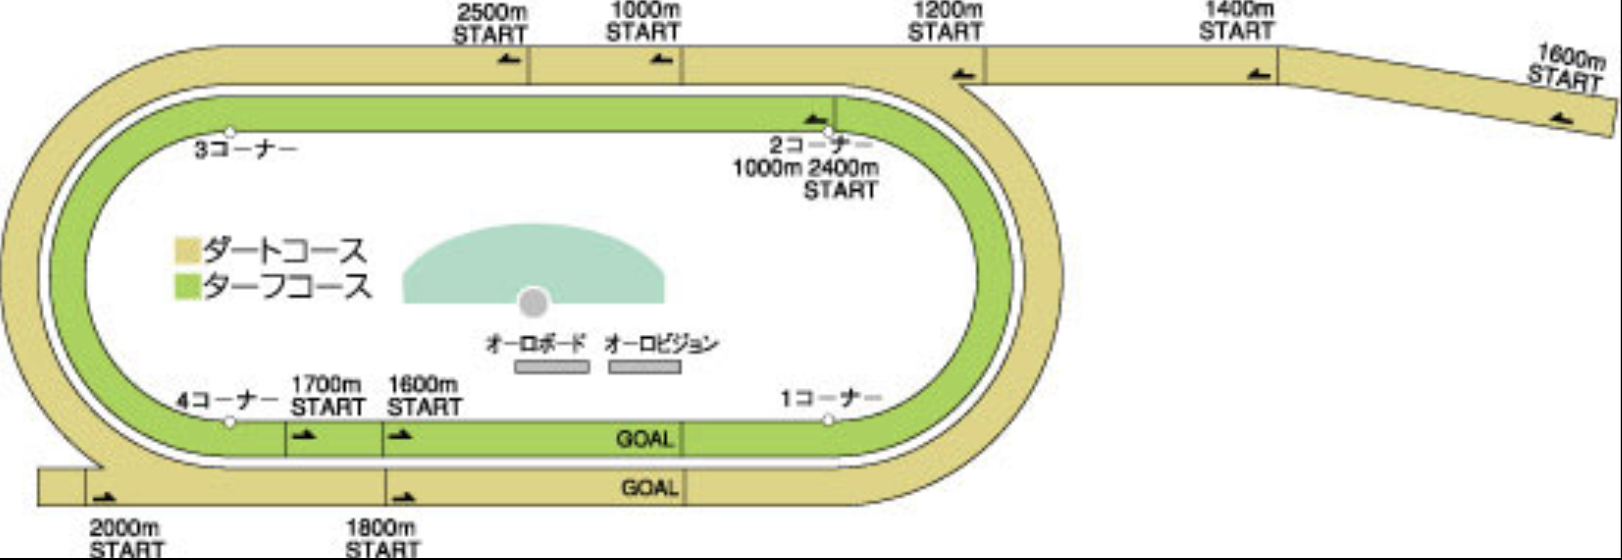 クラスターカップ2017盛岡競馬場